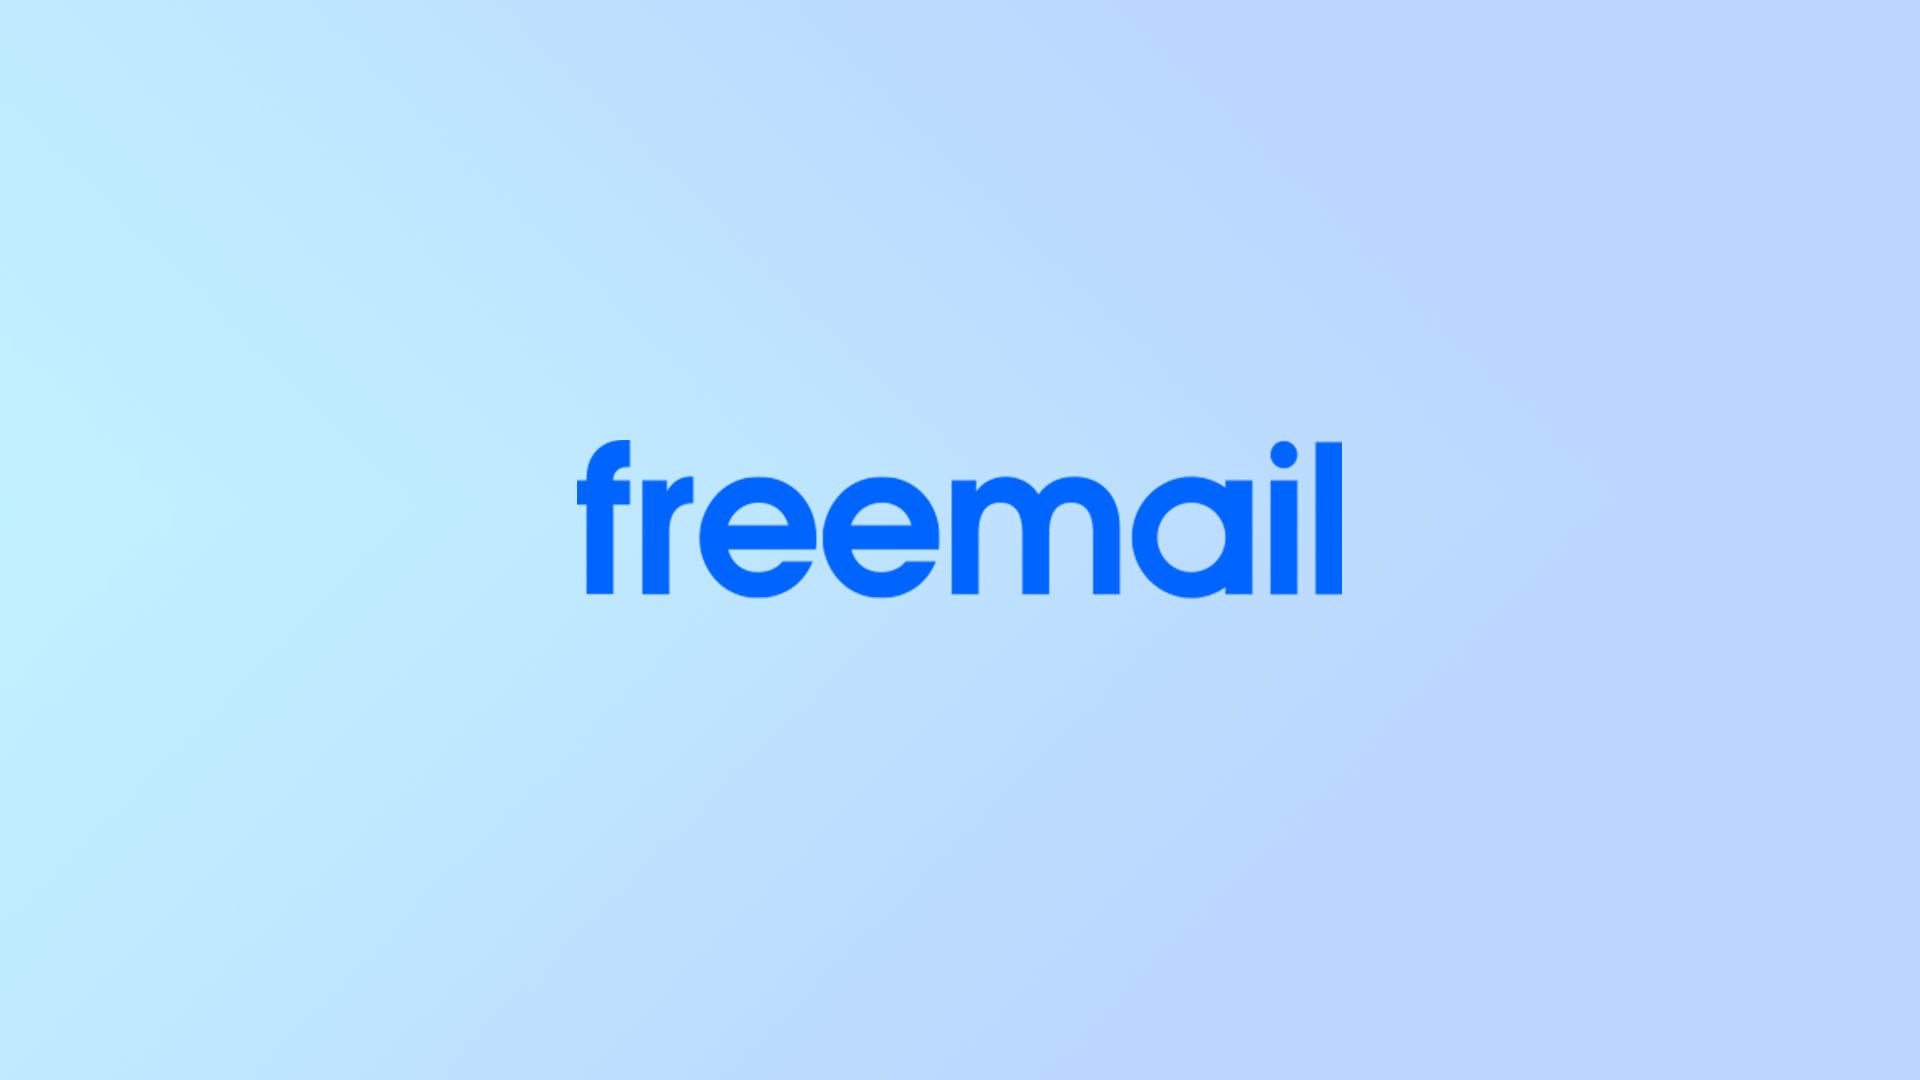 Freemail regisztráció - Új Freemail fiók, e-mail cím létrehozása című cikk borítóképe